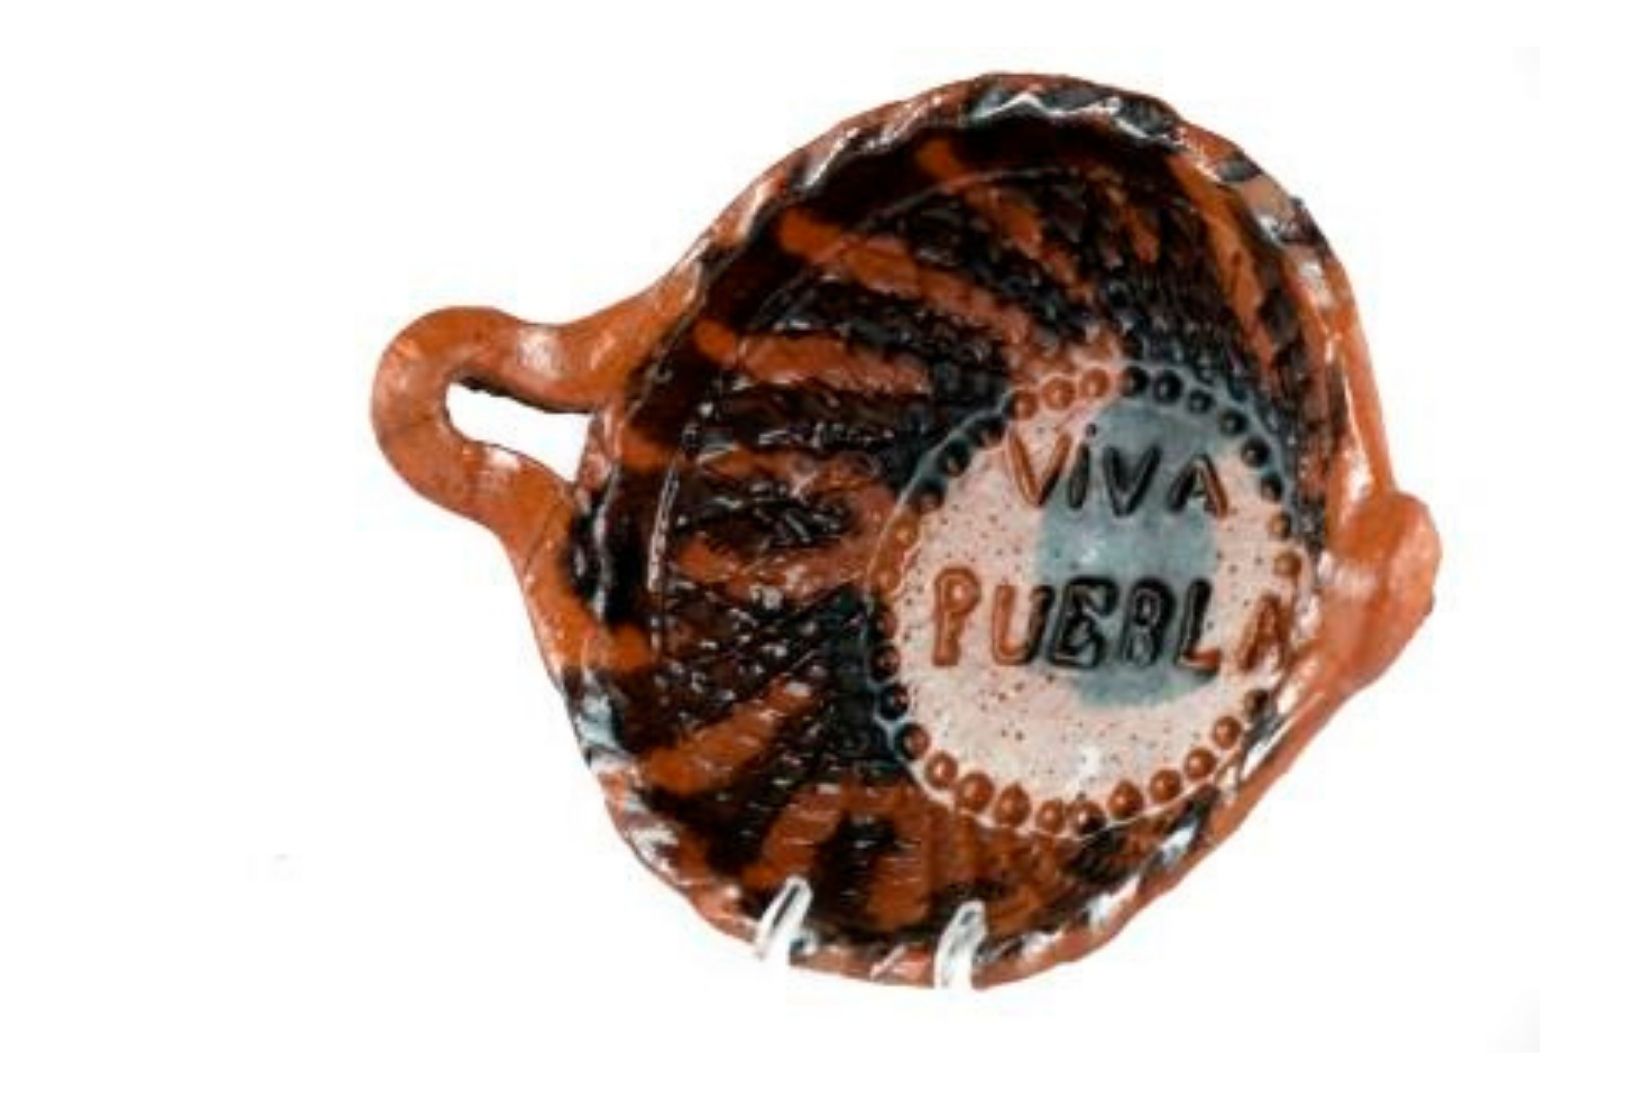 Cazuela en miniatura (7 cms diámetro), barro modelado y esmaltado. Artesano desconocido. Puebla. Col. MAP. (Foto: EKV).